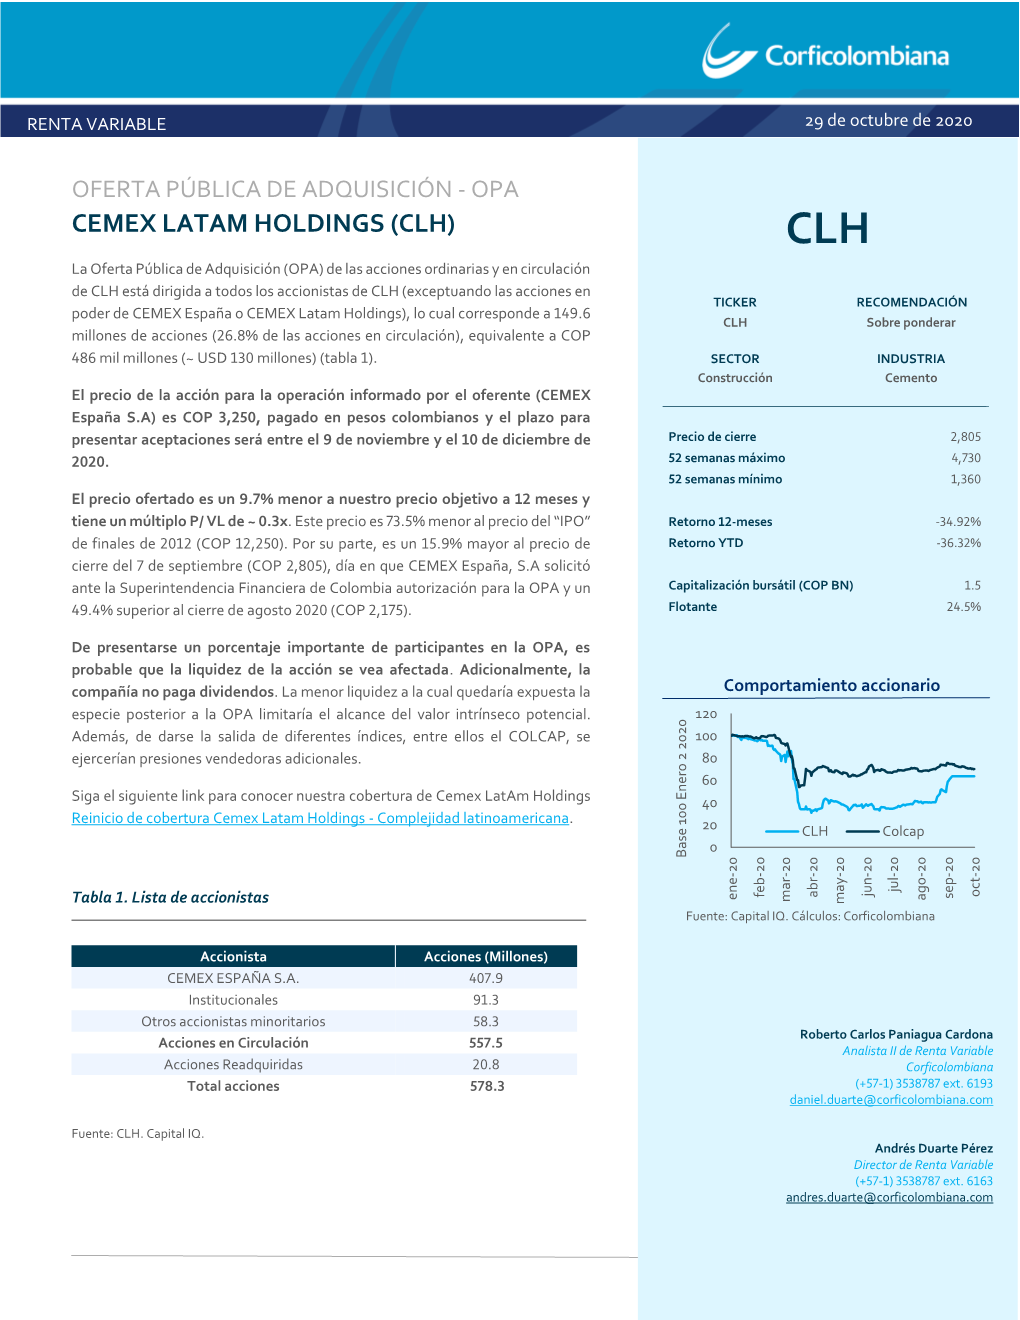 CEMEX LATAM HOLDINGS (CLH) CLH La Oferta Pública De Adquisición (OPA) De Las Acciones Ordinarias Y En Circulación